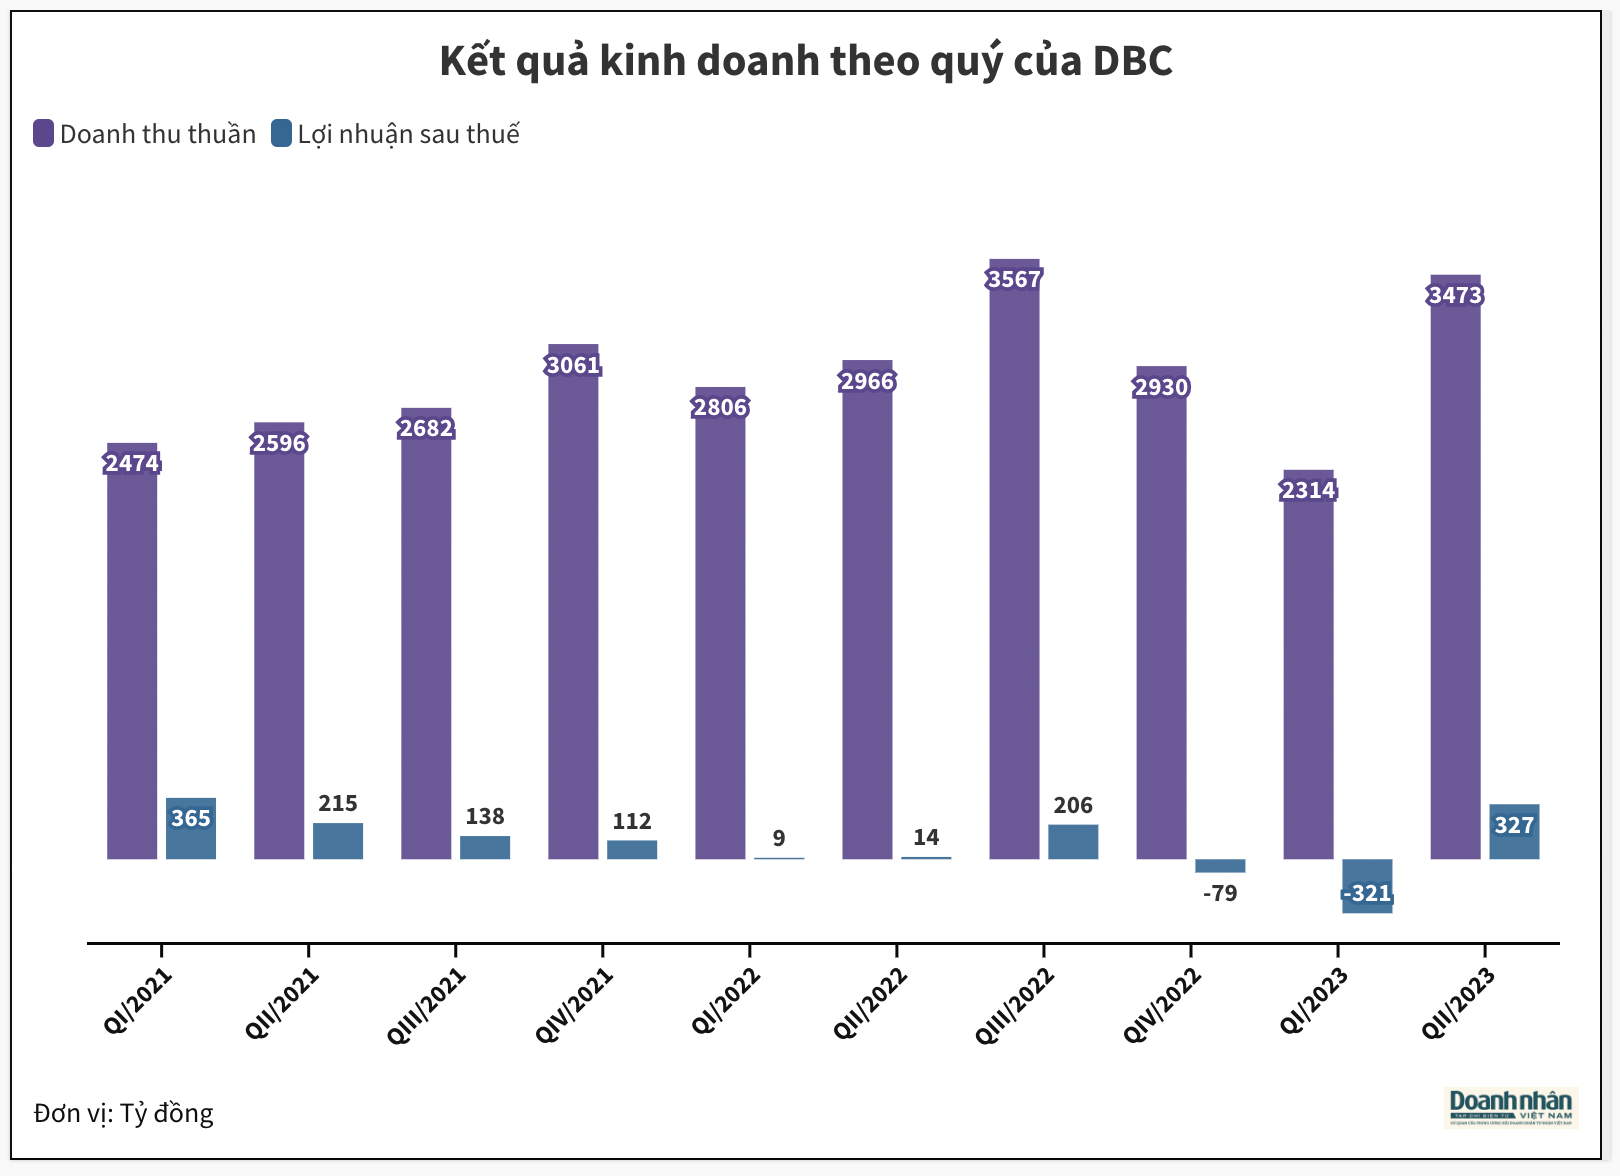 Giá heo tăng giúp Dabaco (DBC) thu lãi ròng quý II gấp 23 lần cùng kỳ - Ảnh 1.